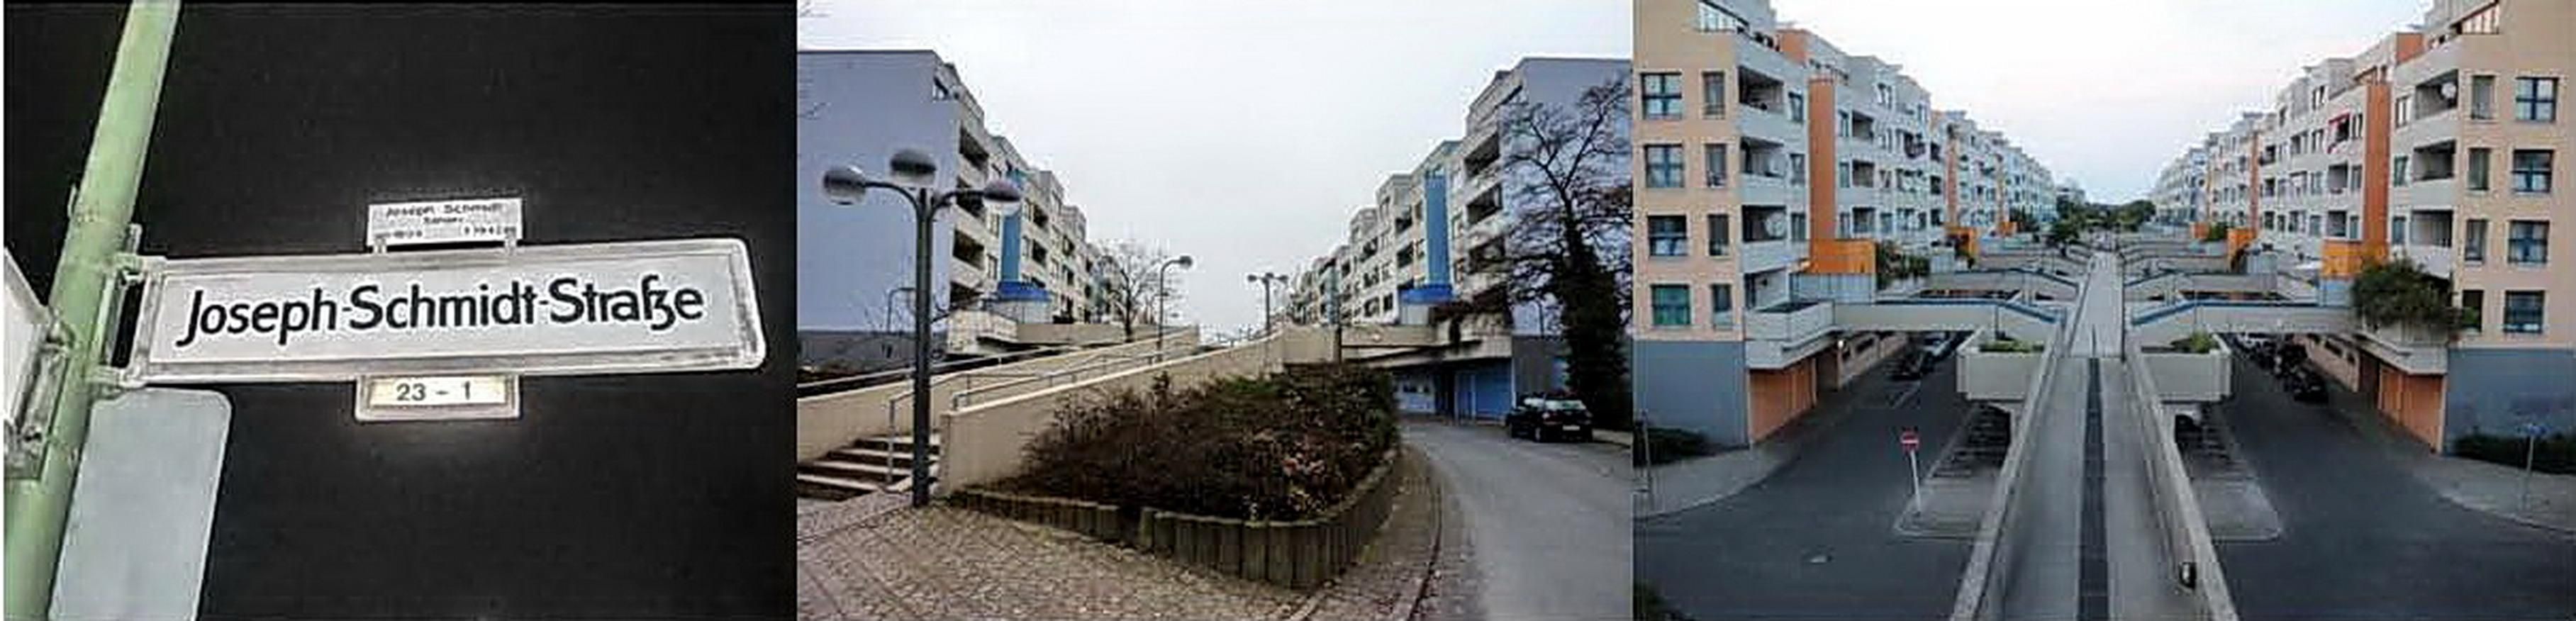 Необычная двухъярусная улица Йозефа Шмидта в Берлине